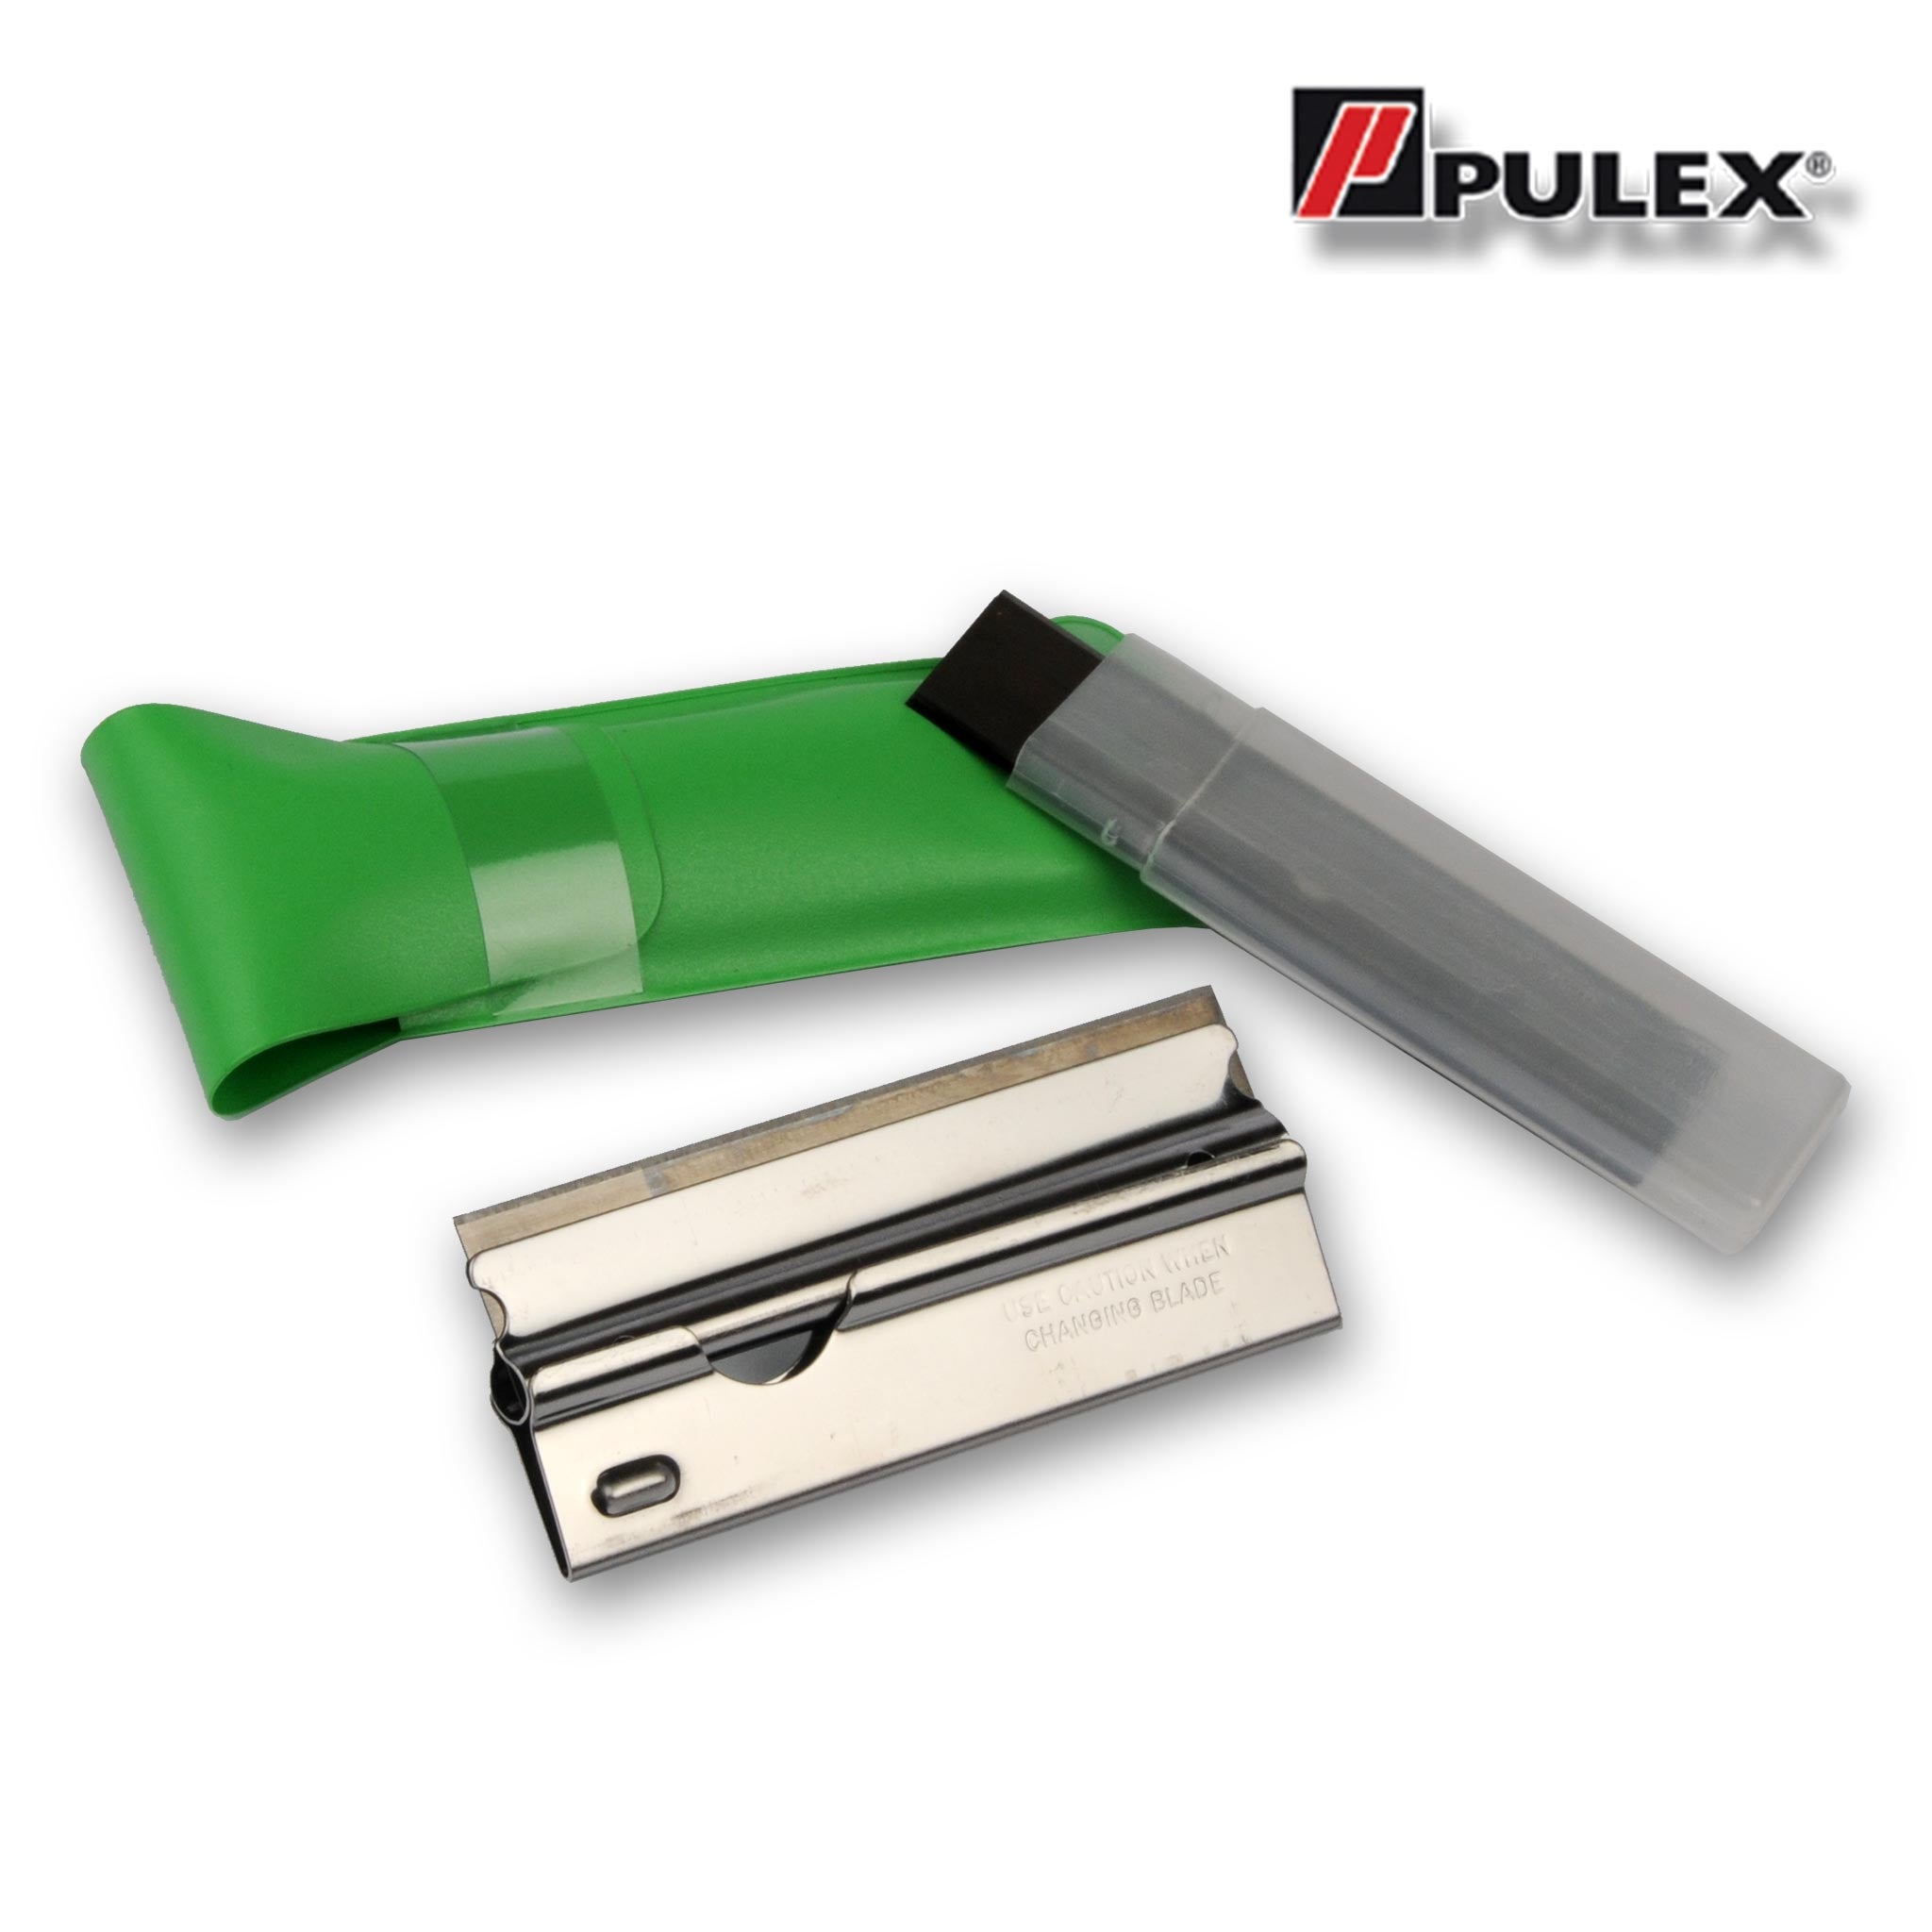 Pulex Trim Scraper 10cm with 10 blades